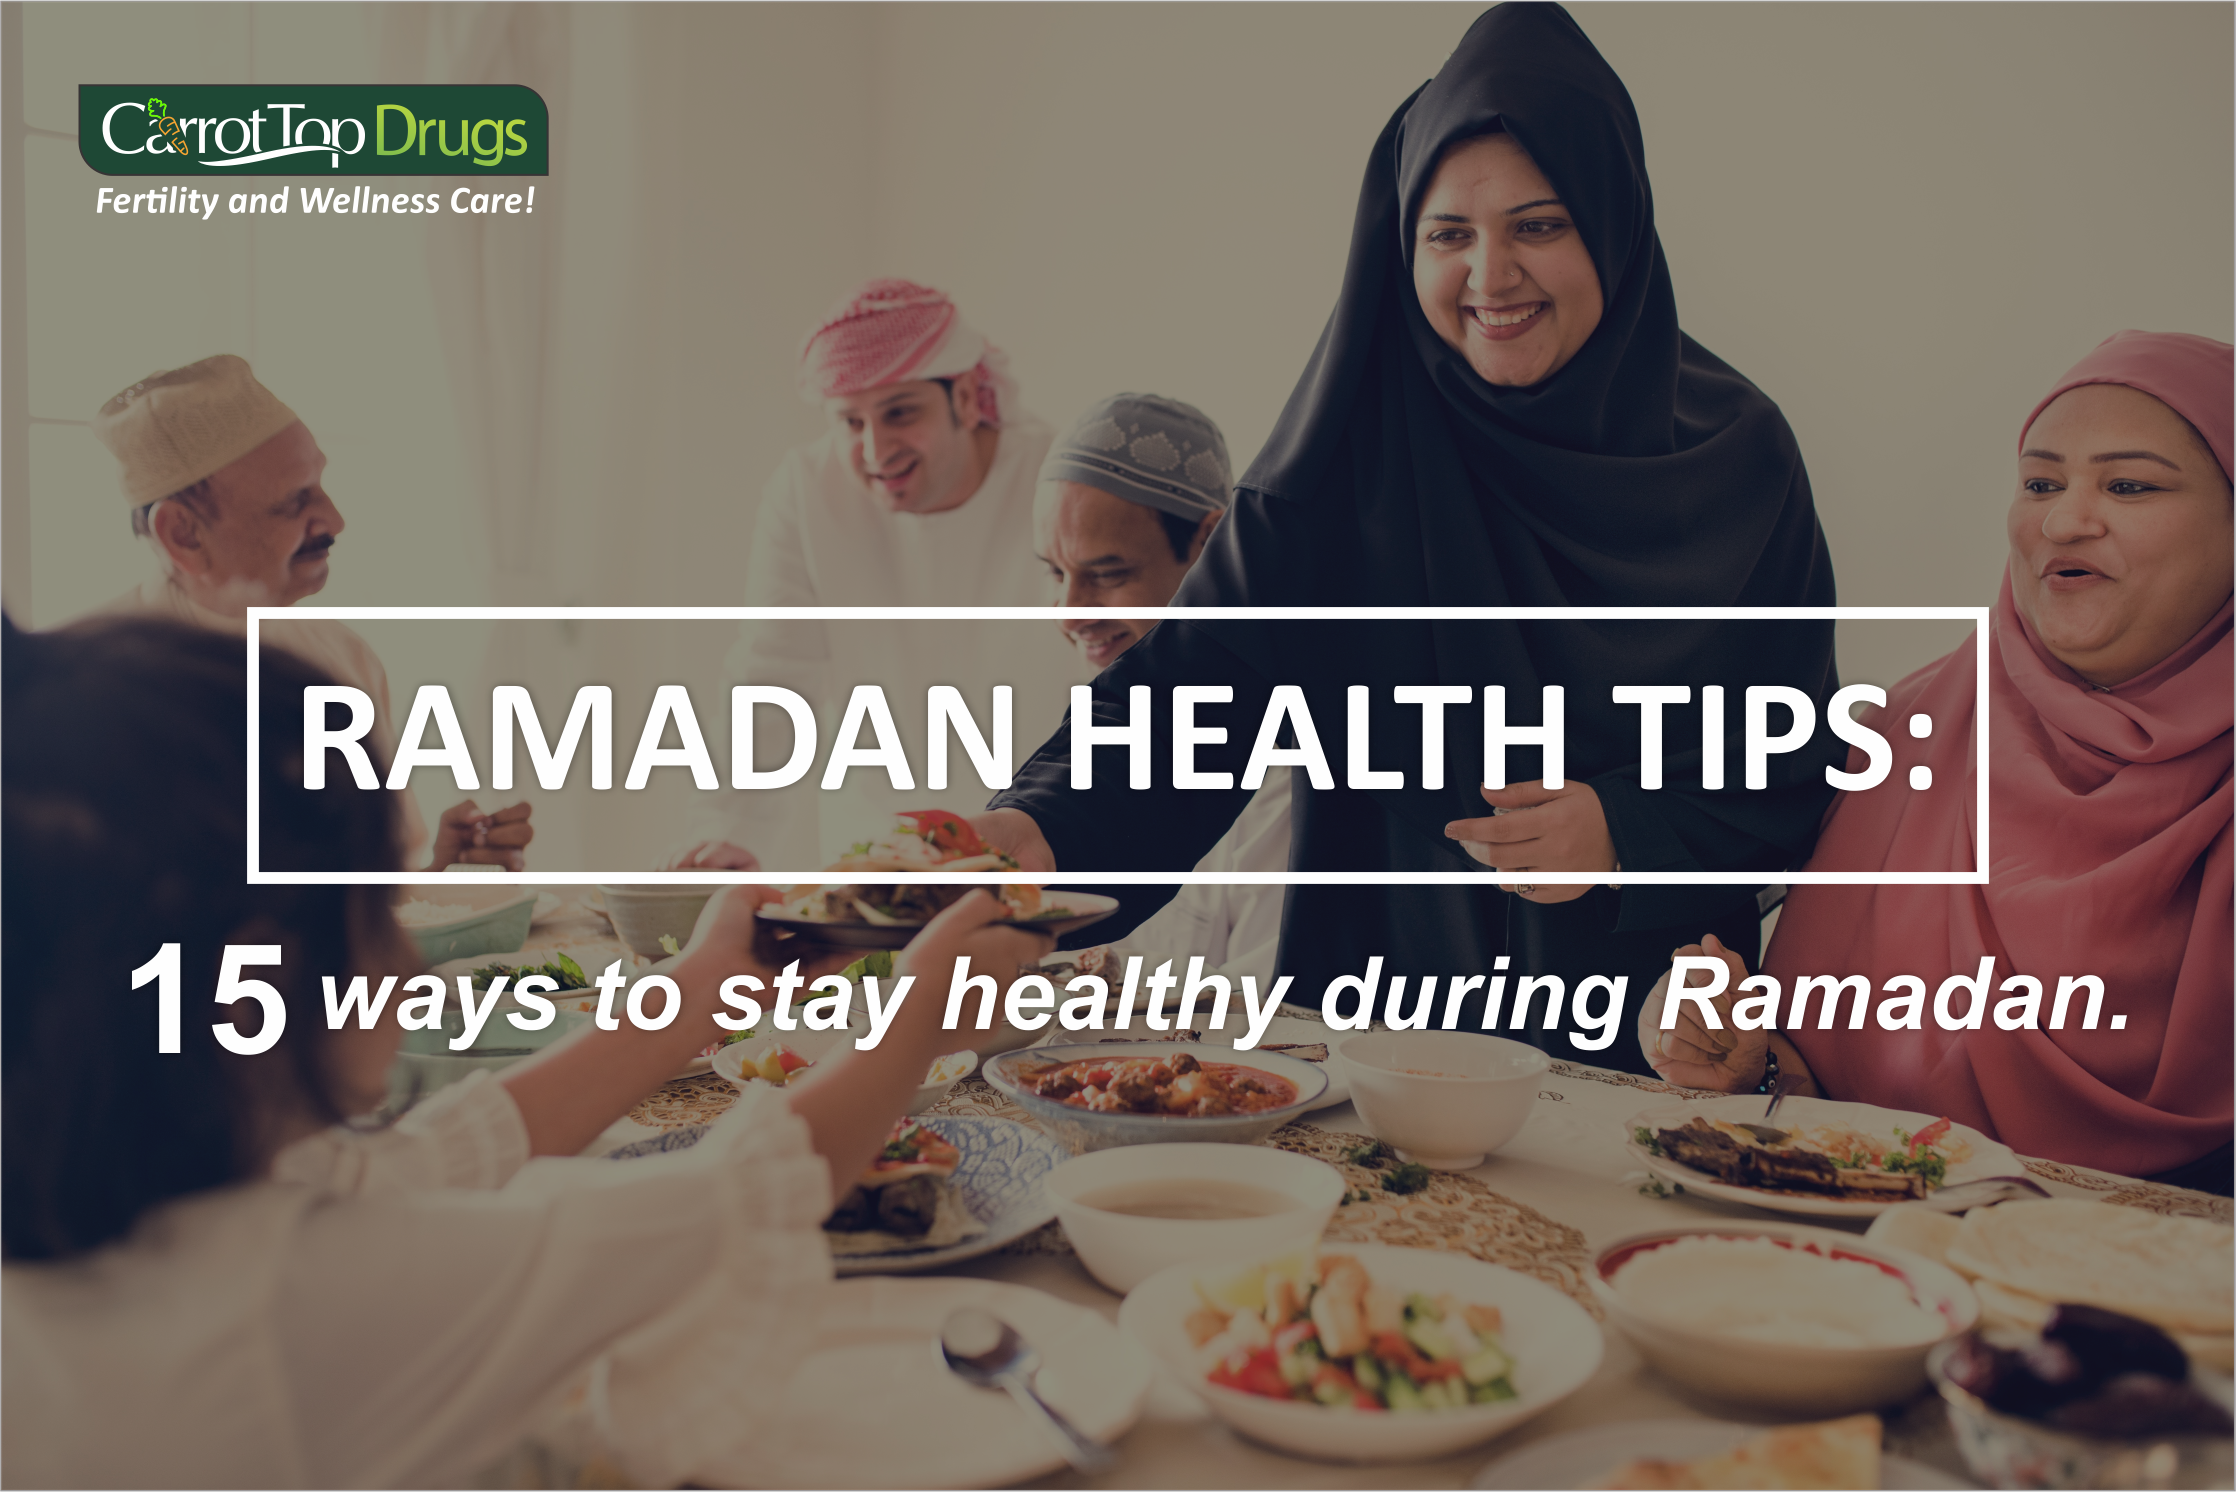 RAMADAN HEALTH TIPS: 15 WAYS TO STAY HEALTHY DURING RAMADAN